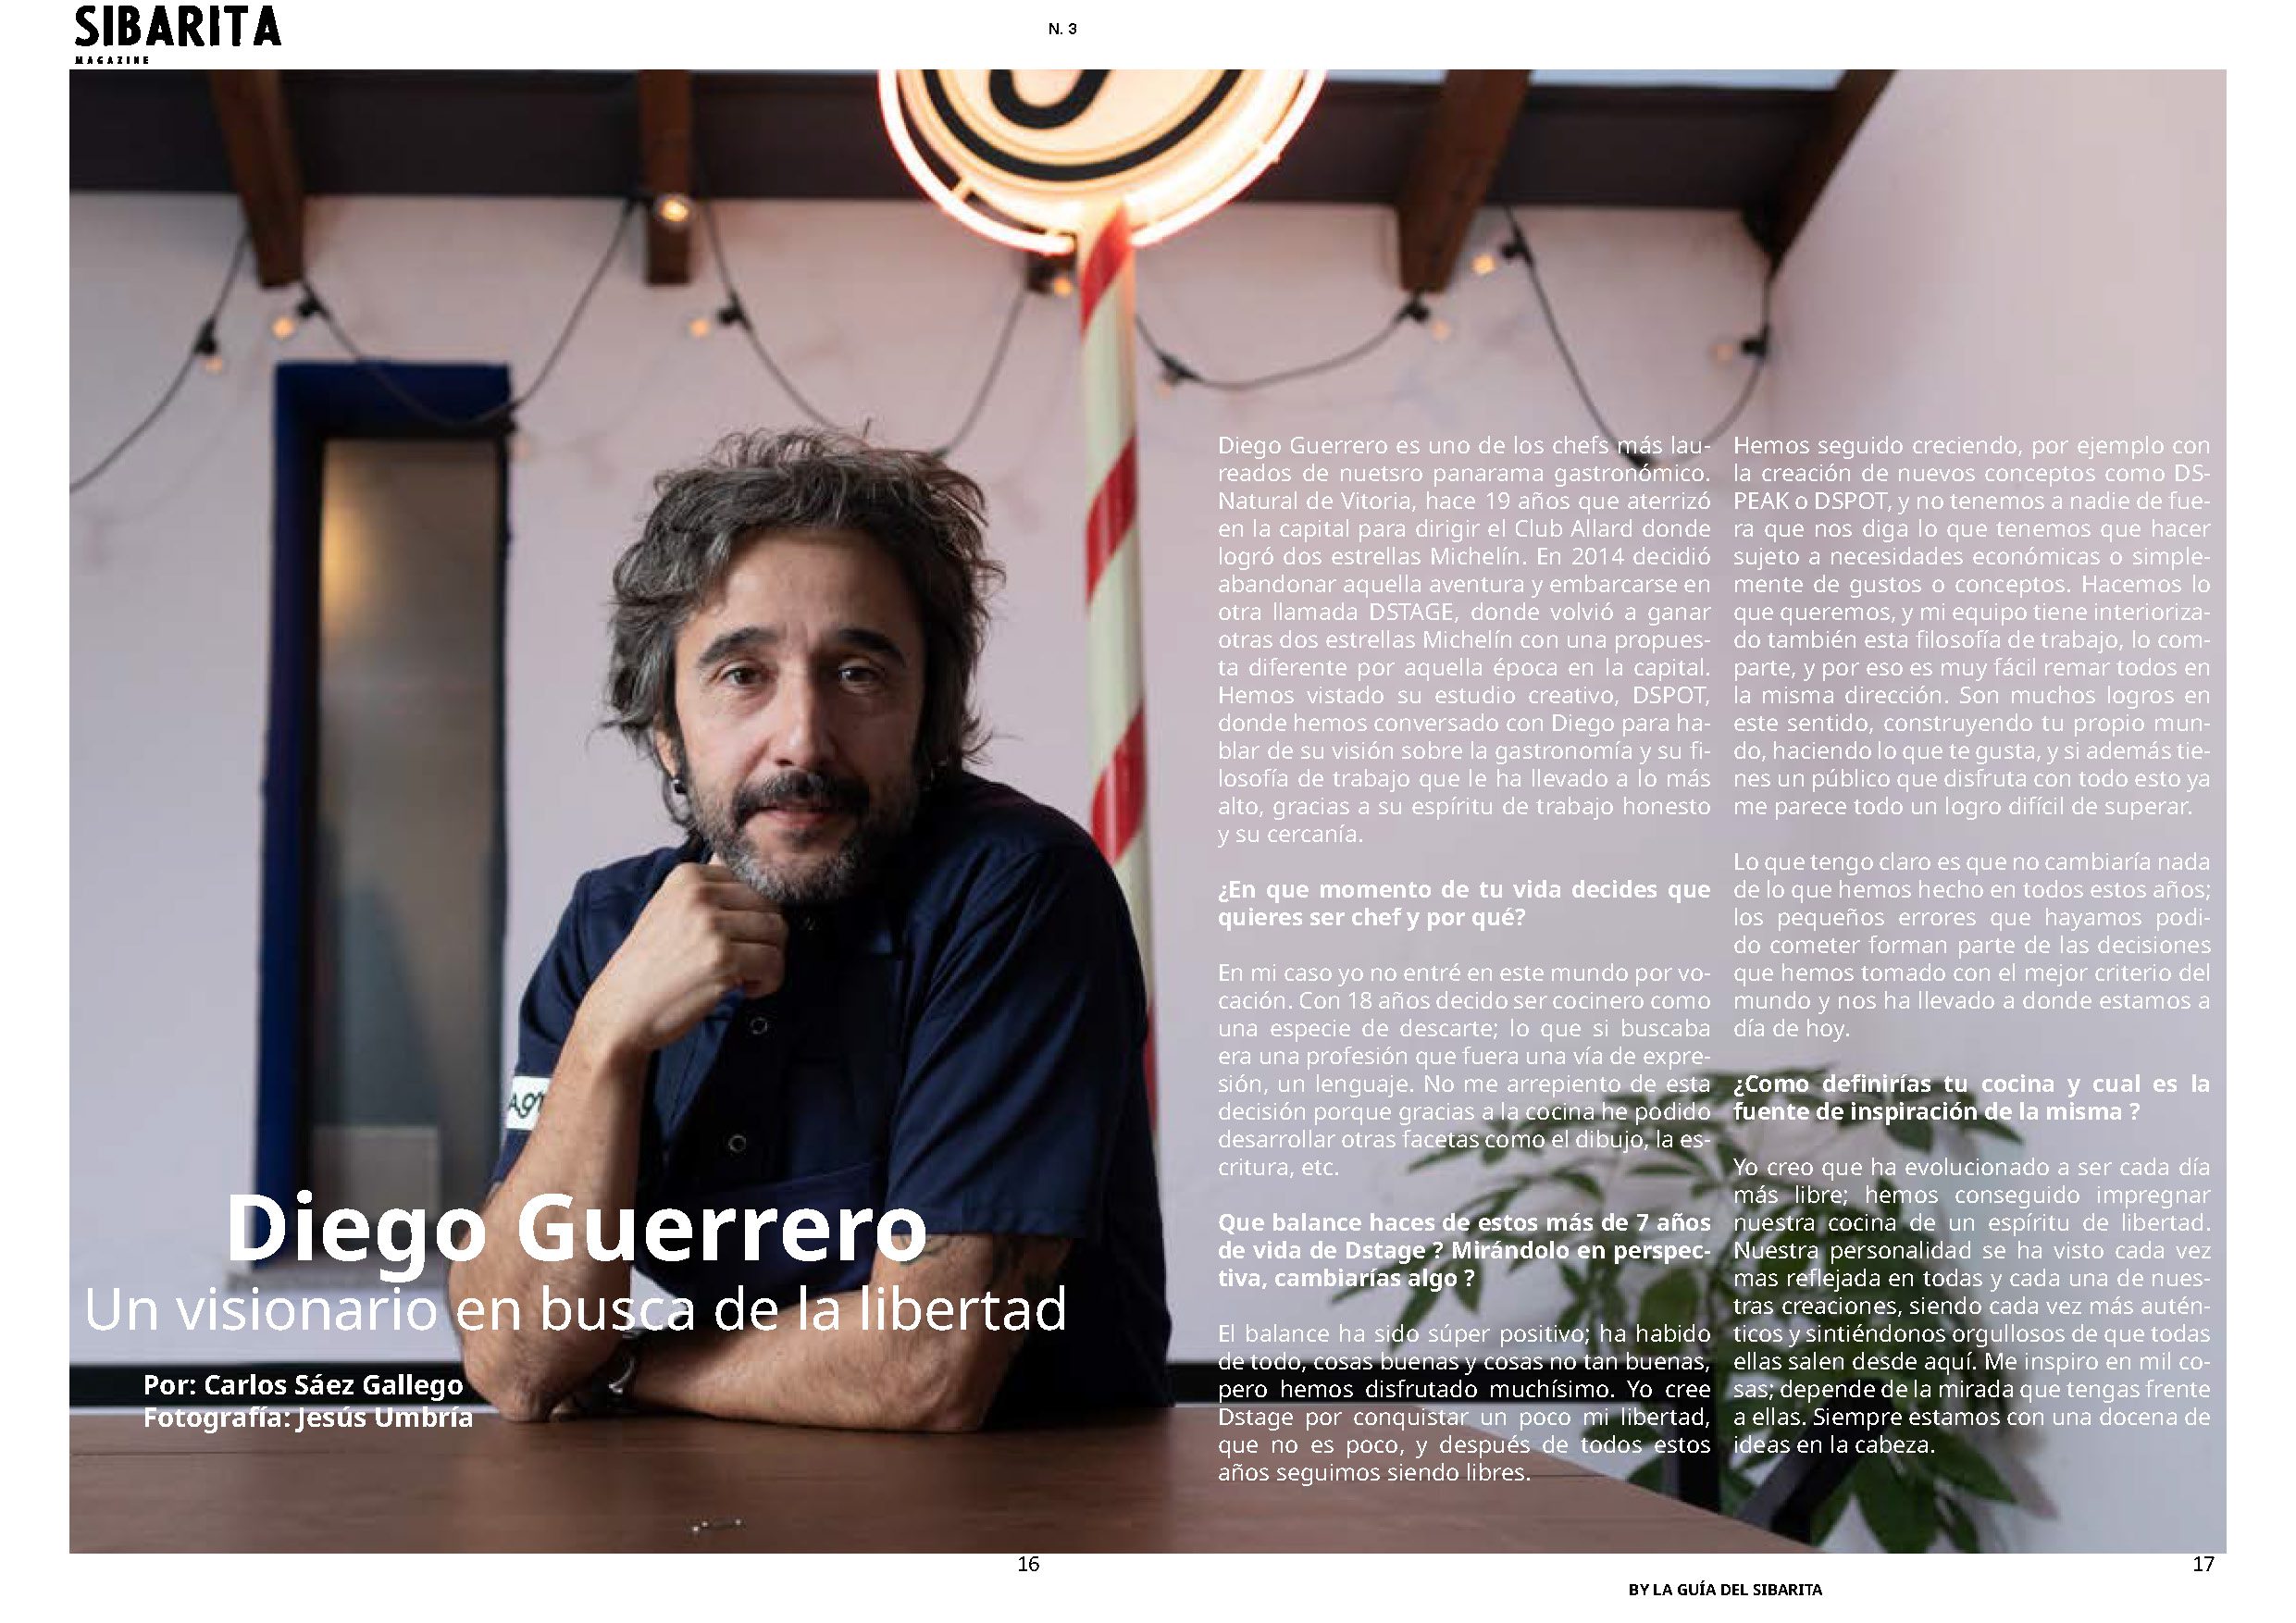 Sibarita Magazine - Entrevista a Diego Guerrero